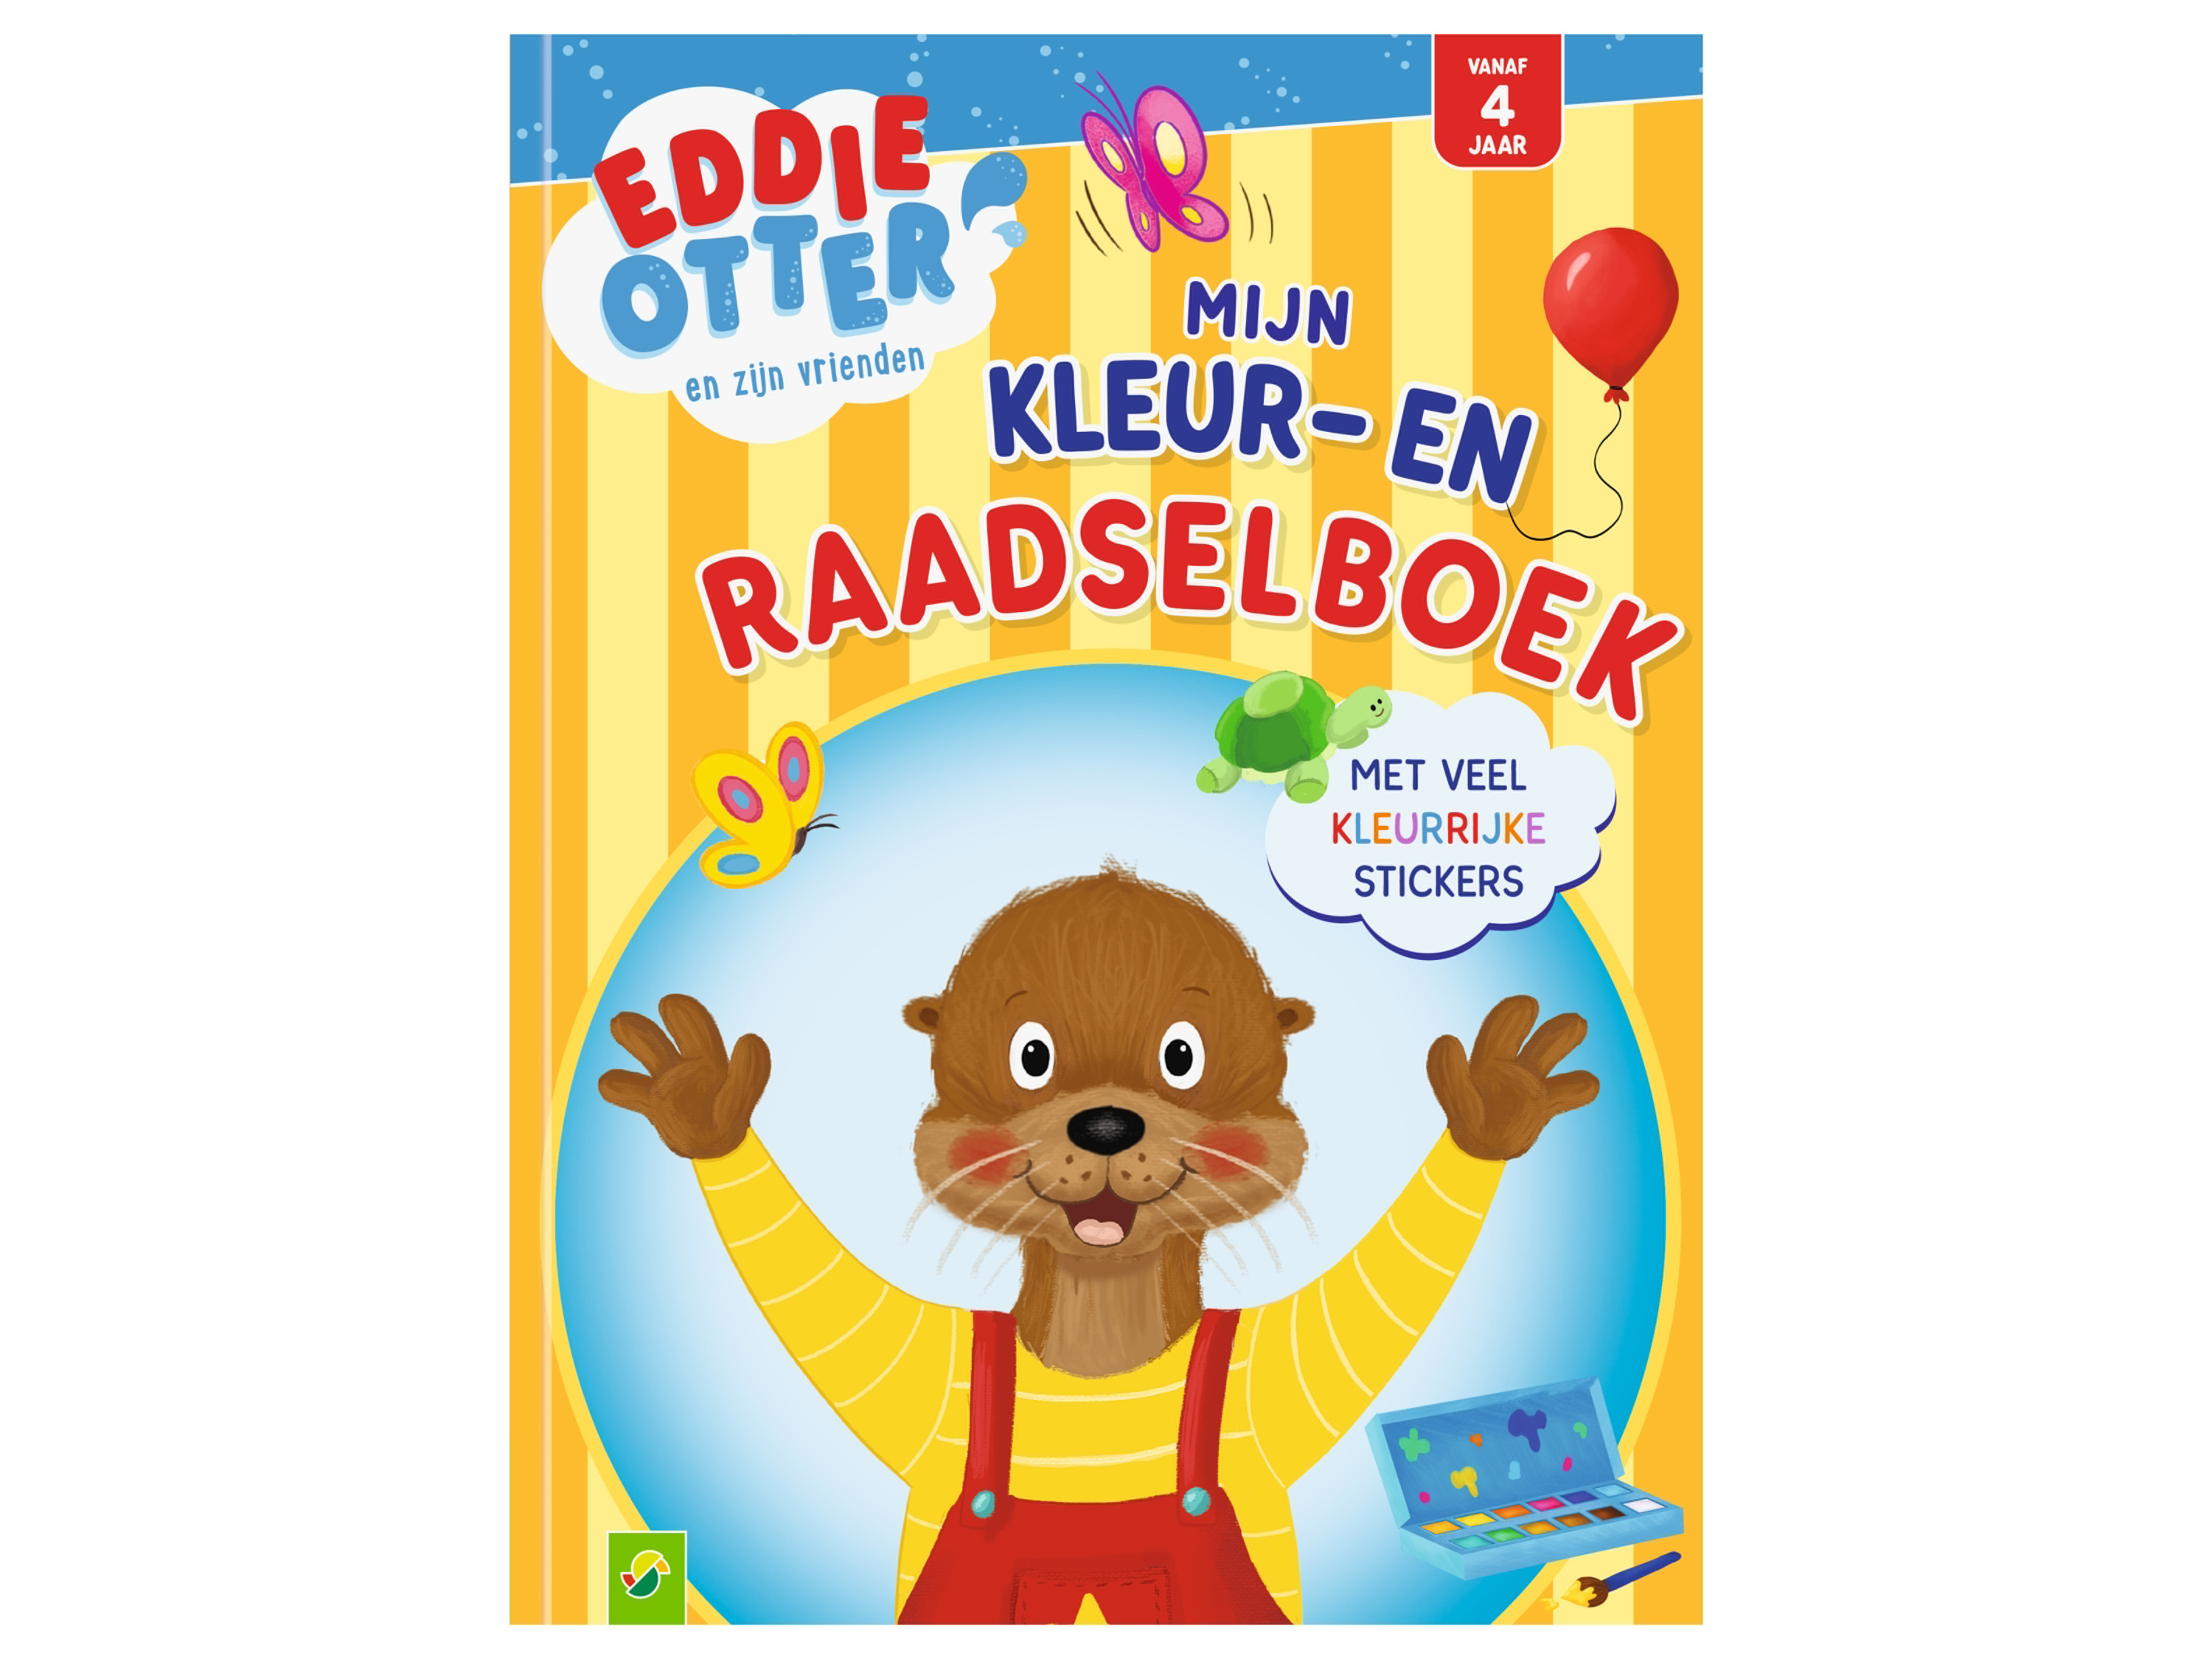 Activiteitenboek voor kinderen (Eddie Otter kleurpuzzelboek)